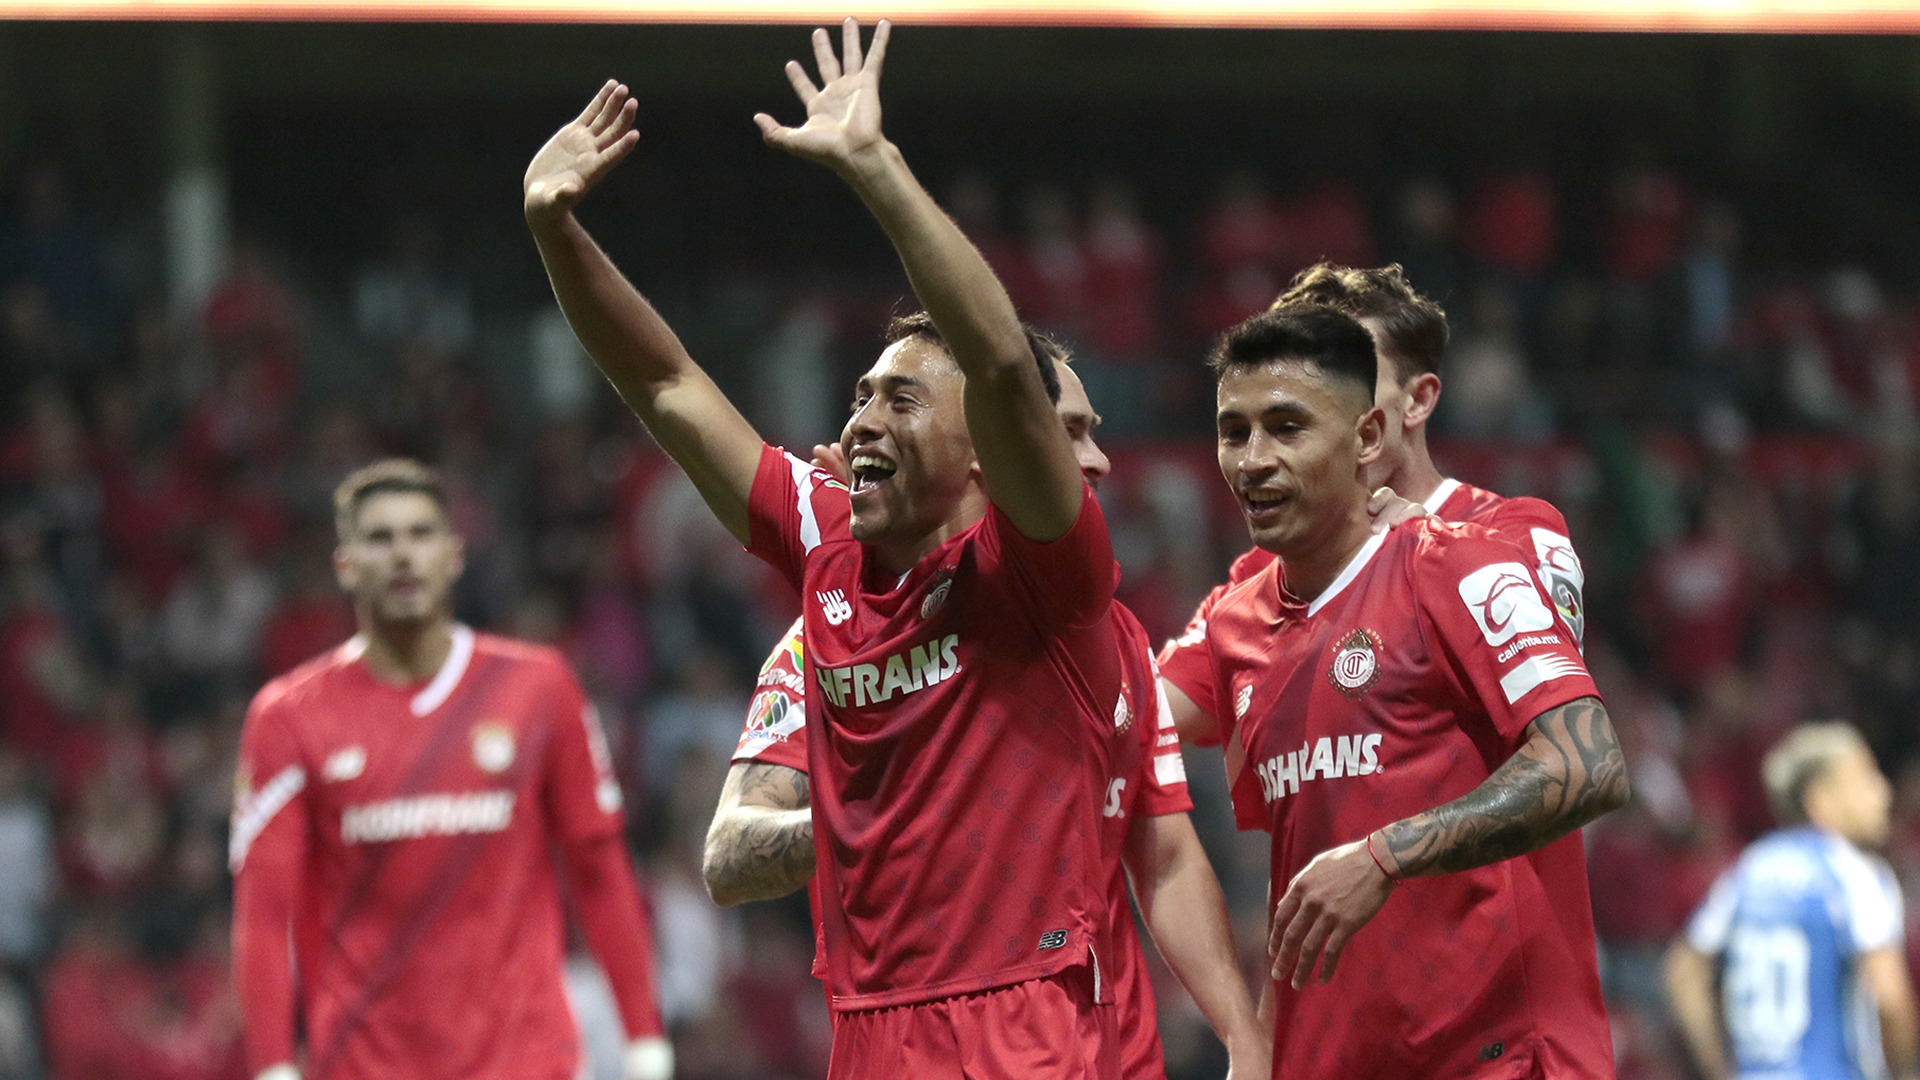 Con anotación de Juan Pablo Domínguez, el Diablo hizo valer su condición de local:1-0 sobre Rayados de Monterrey